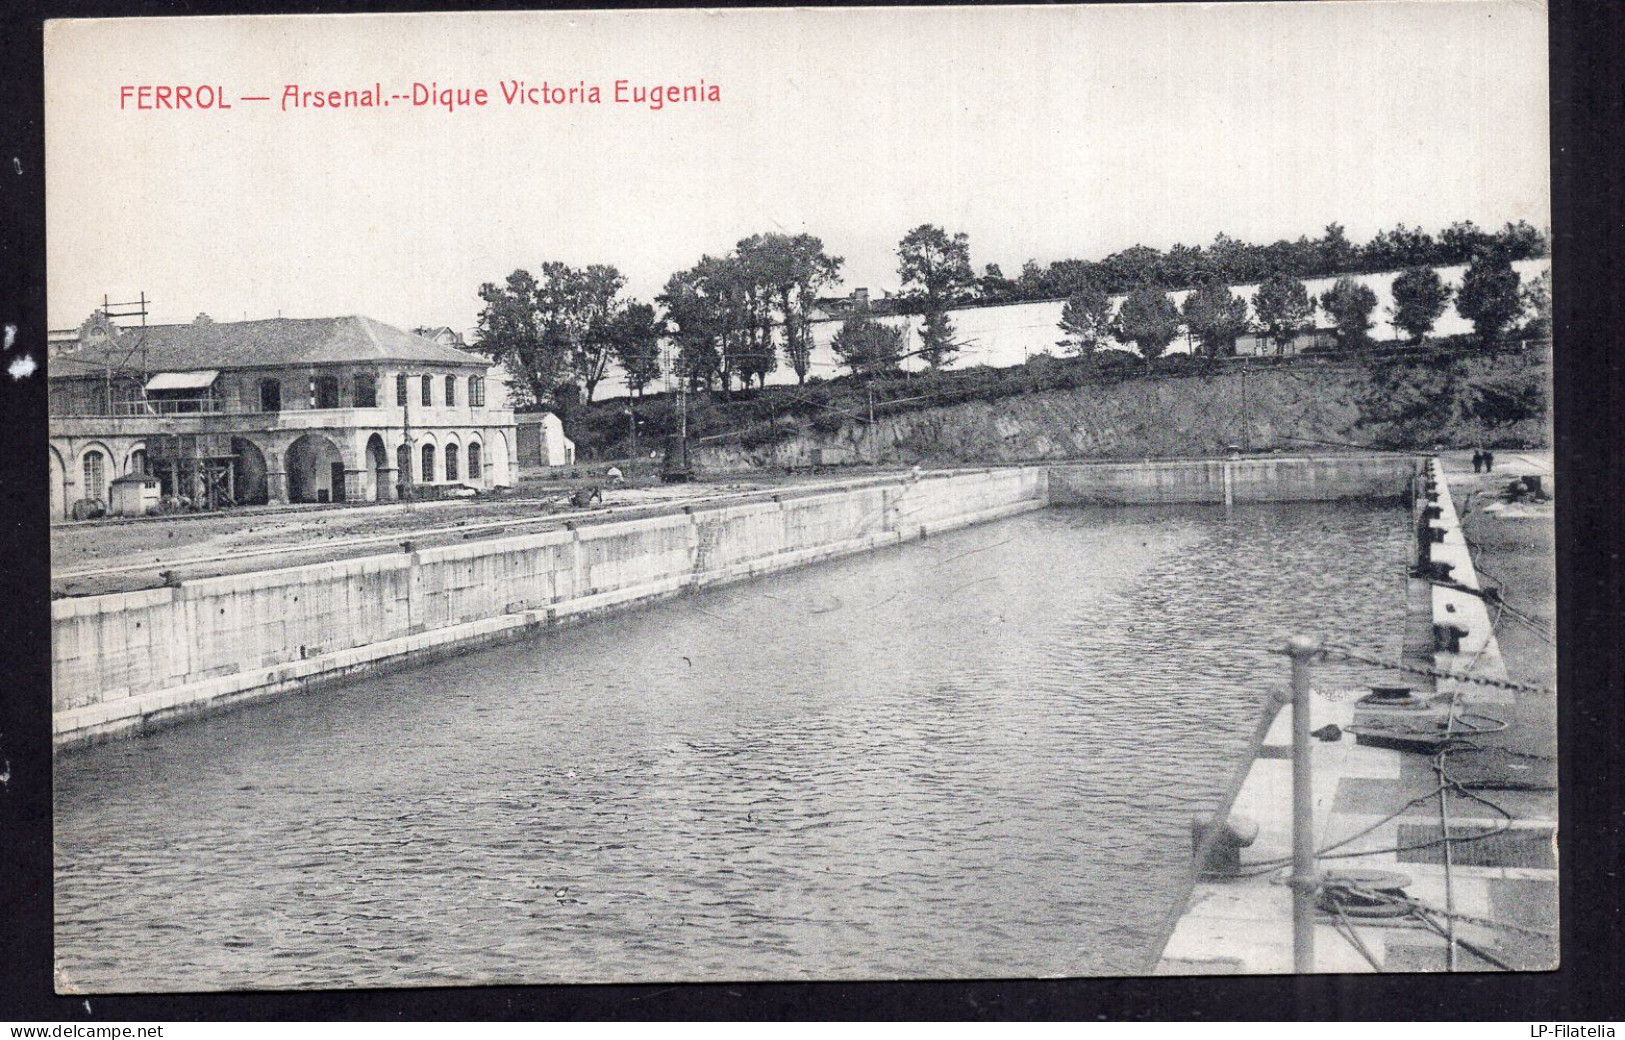 España - 1912 - Ferrol - Arsenal - Dique Victoria Eugenia - La Coruña